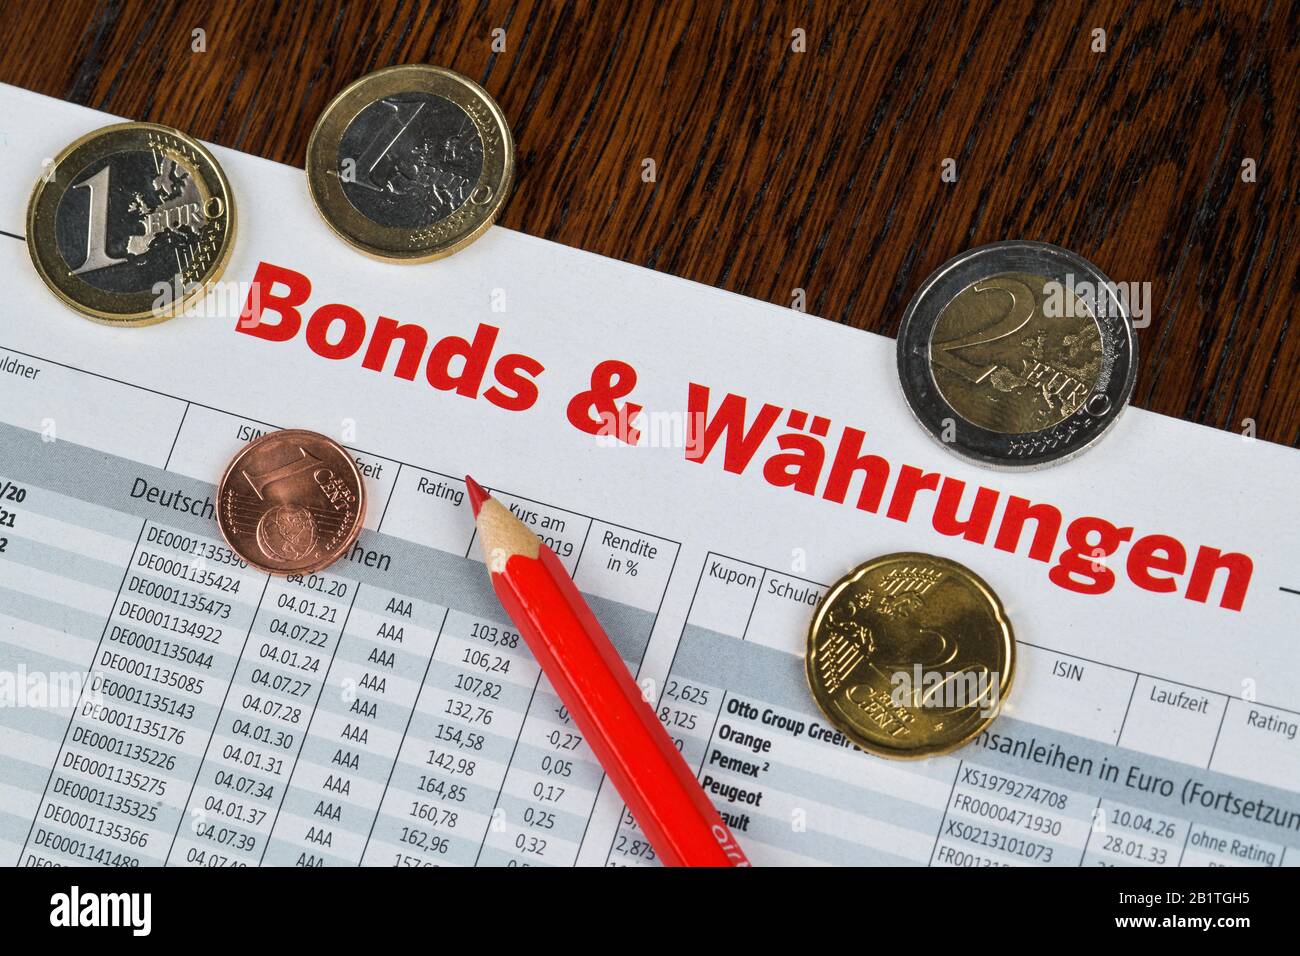 Börseninformation, Zeitung, Bonds und Währungen Stock Photo